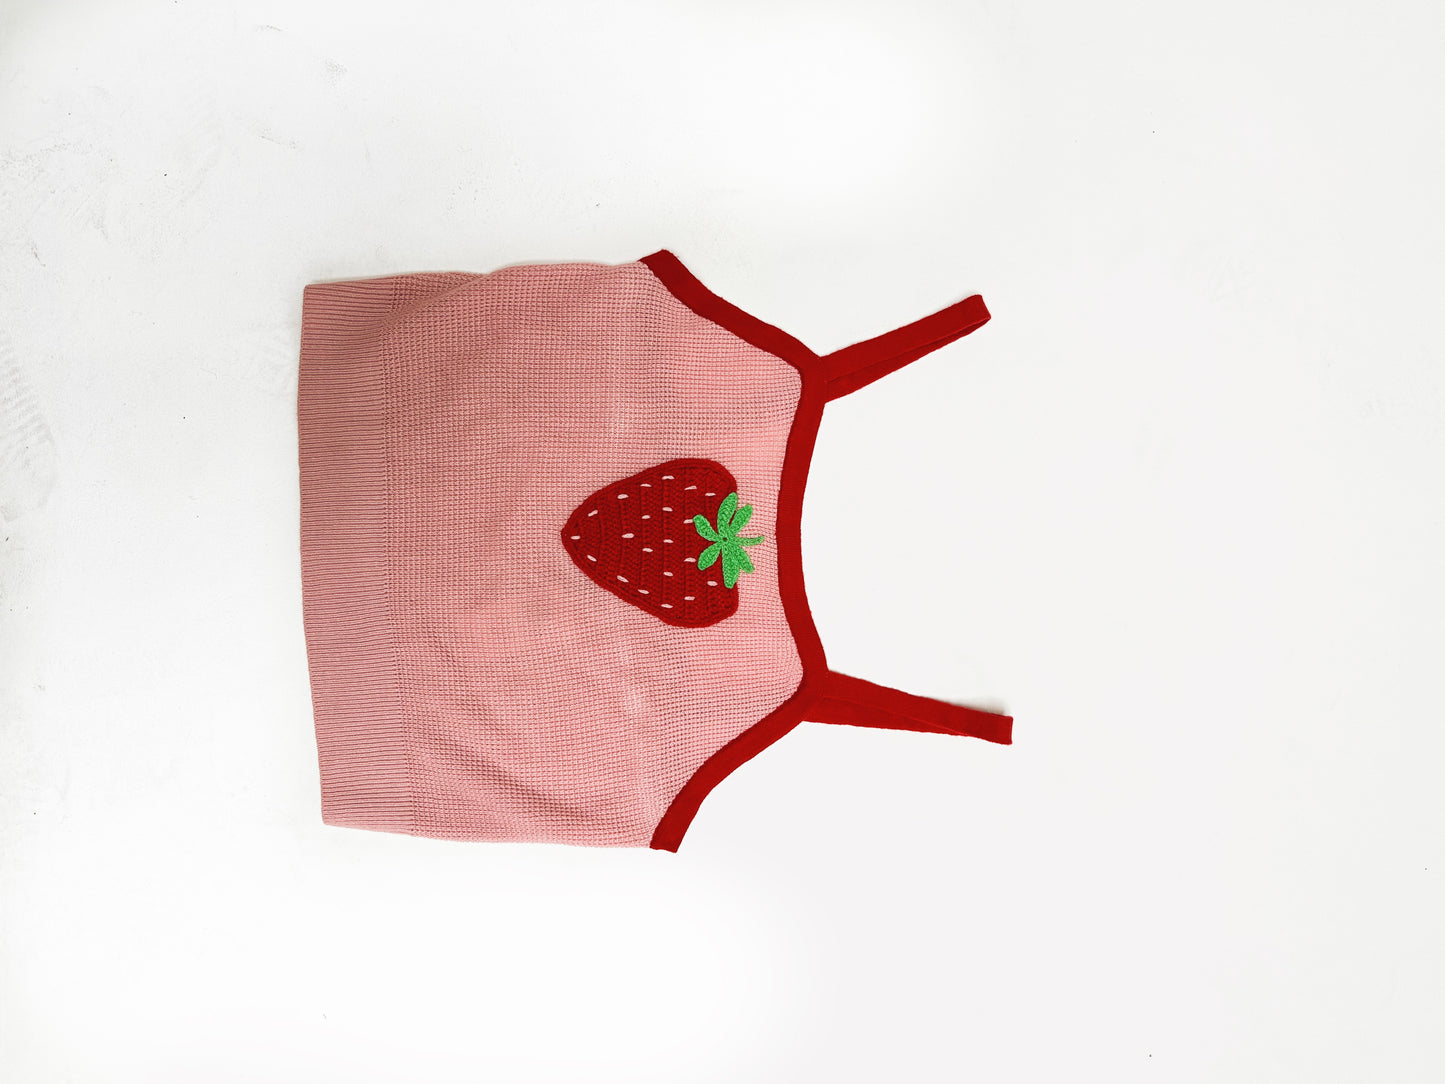 JoJo Siwa's Strawberry Shirt